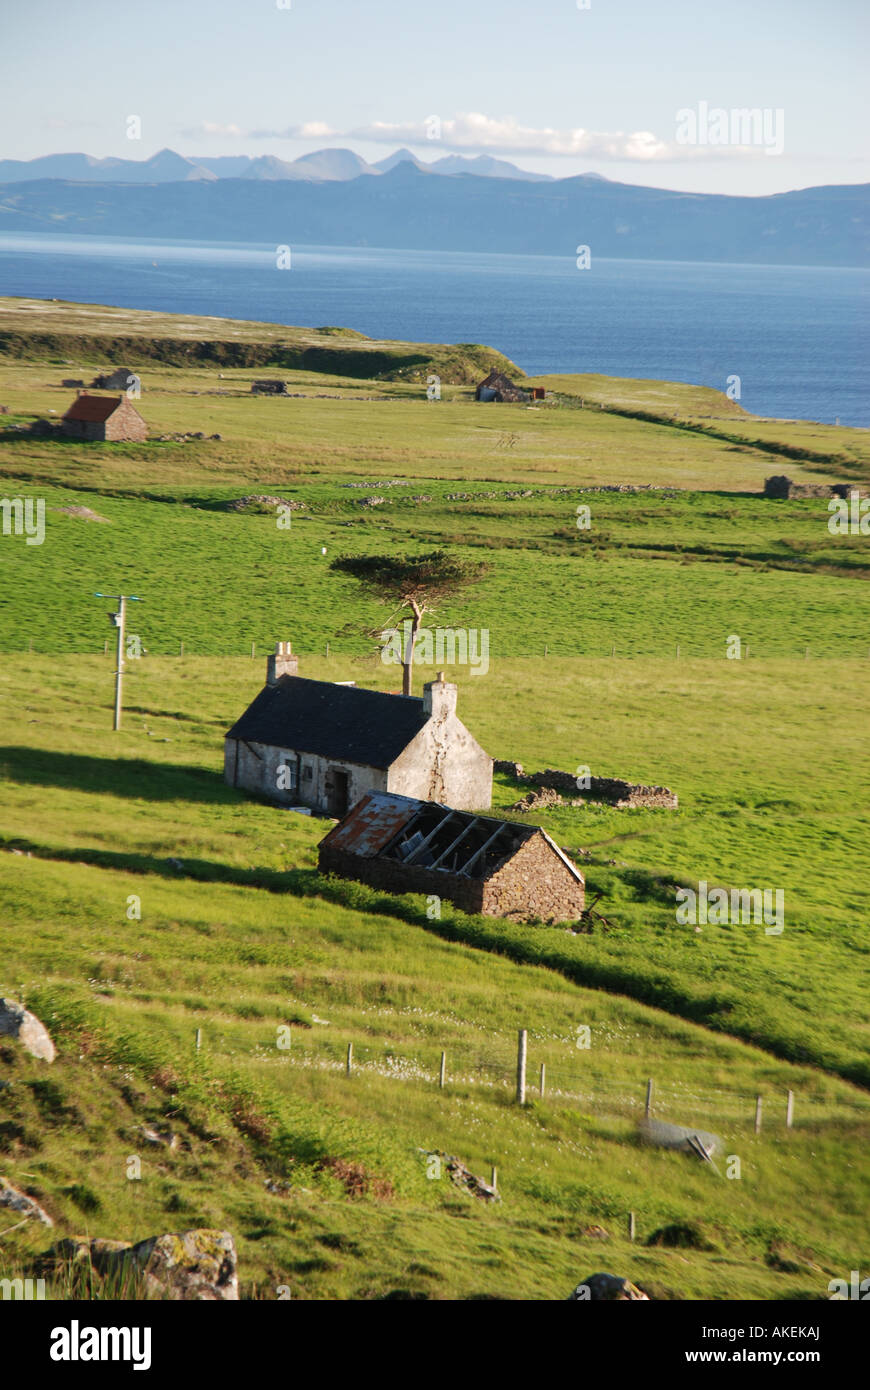 Piccole aziende agricole lungo suono interno a nord di Applecross, nel retro Isola di Skye, costa atlantica, NW Highland Scozia Scotland Foto Stock